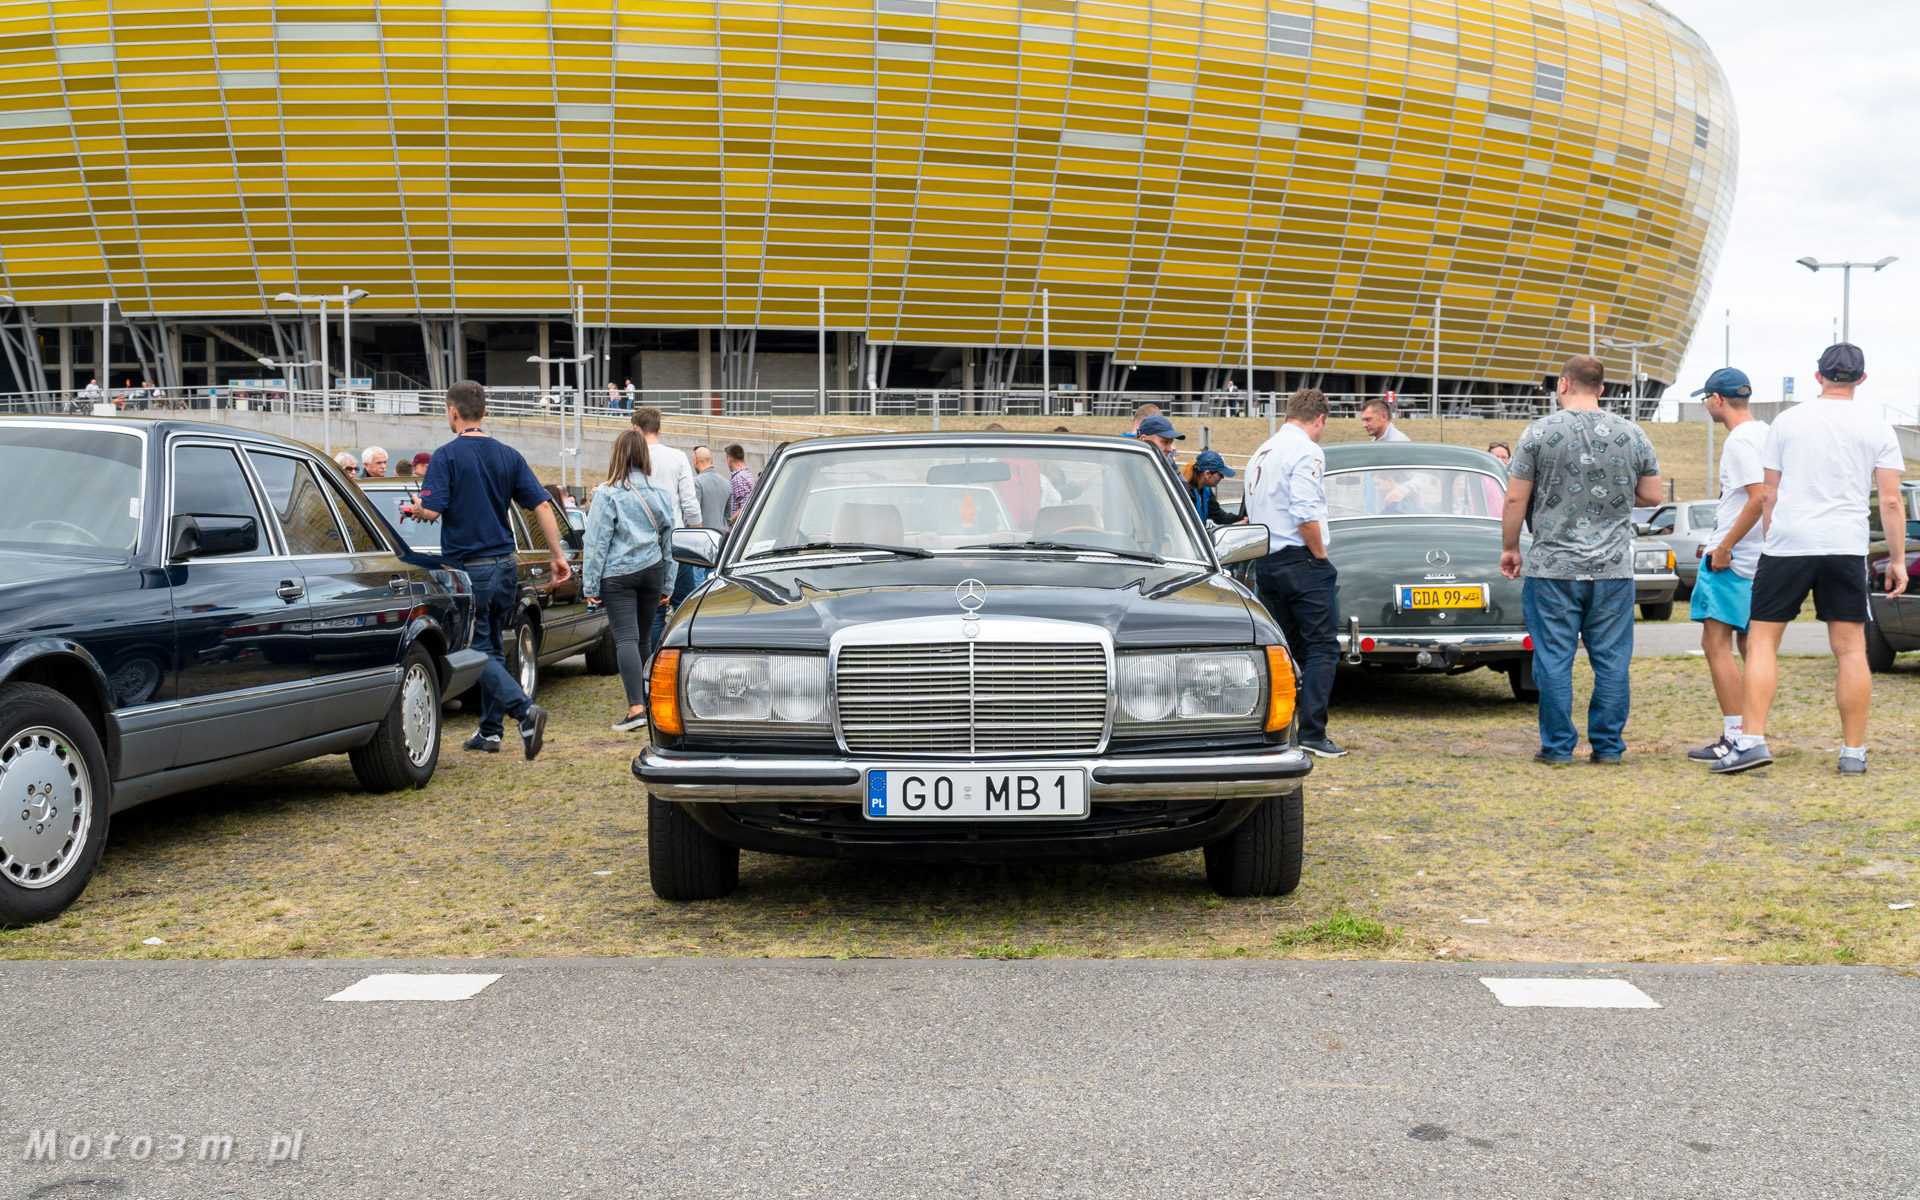 Mercedesy opanowały parking przy gdańskim Stadionie II